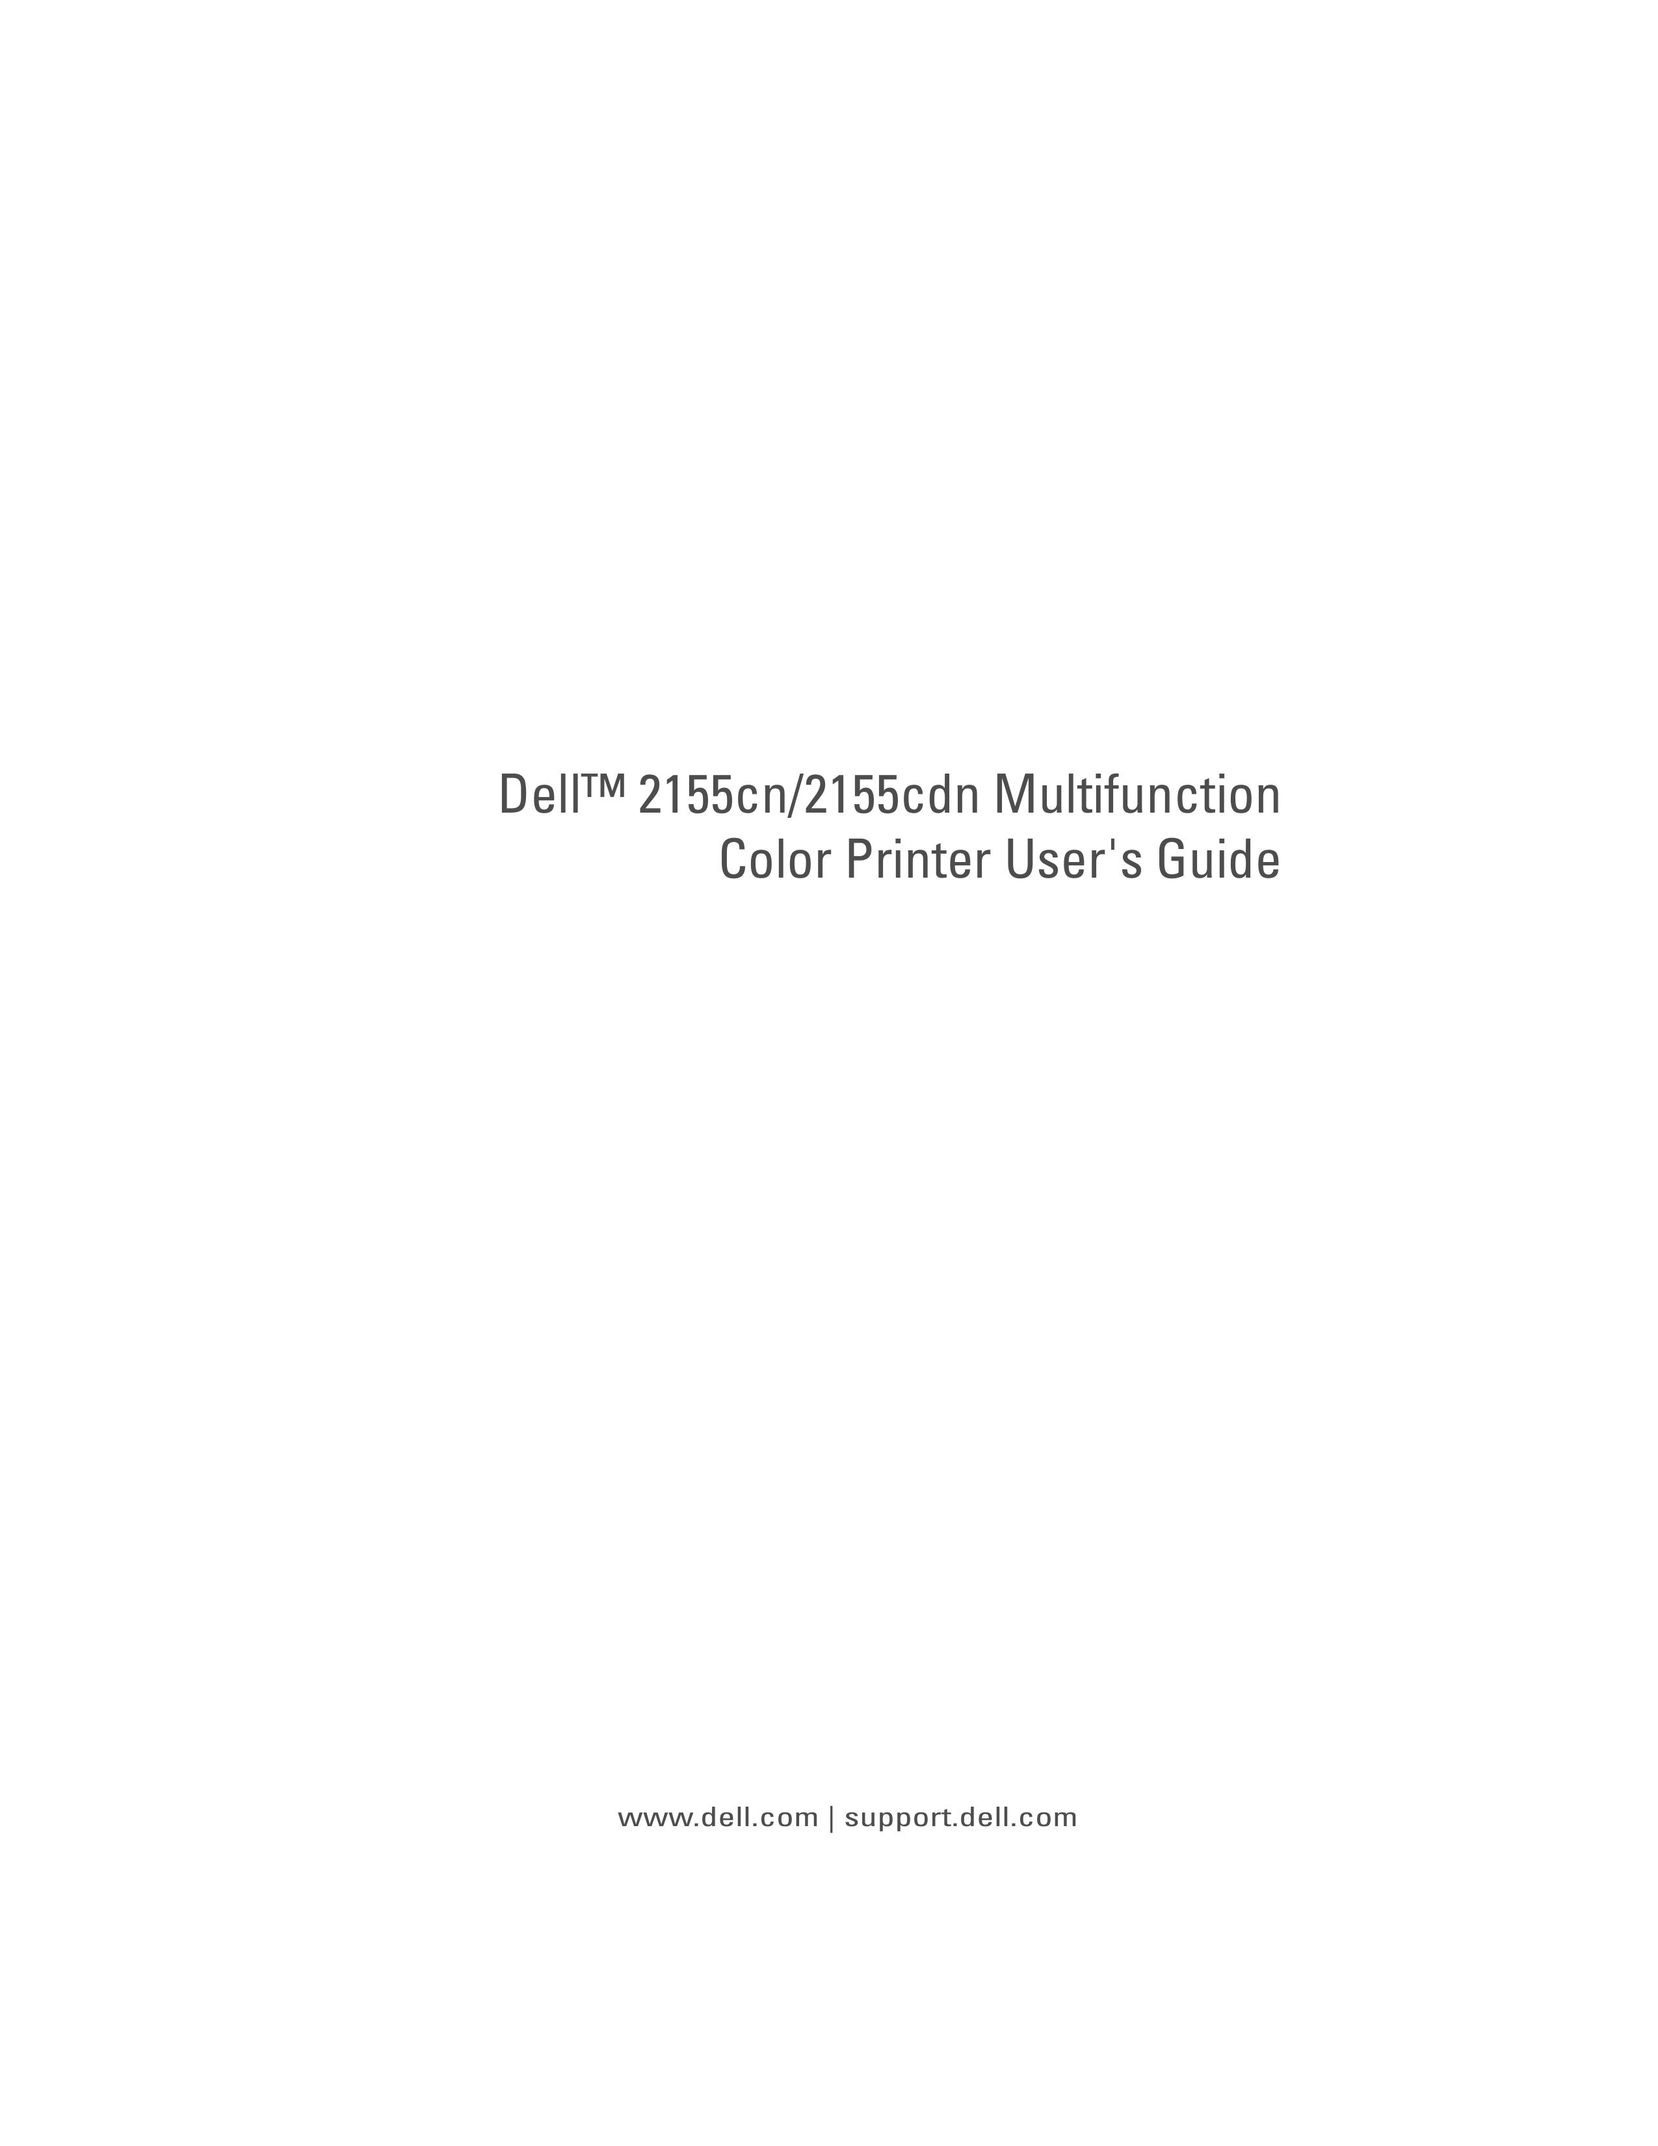 Dell 2155CDN Printer User Manual